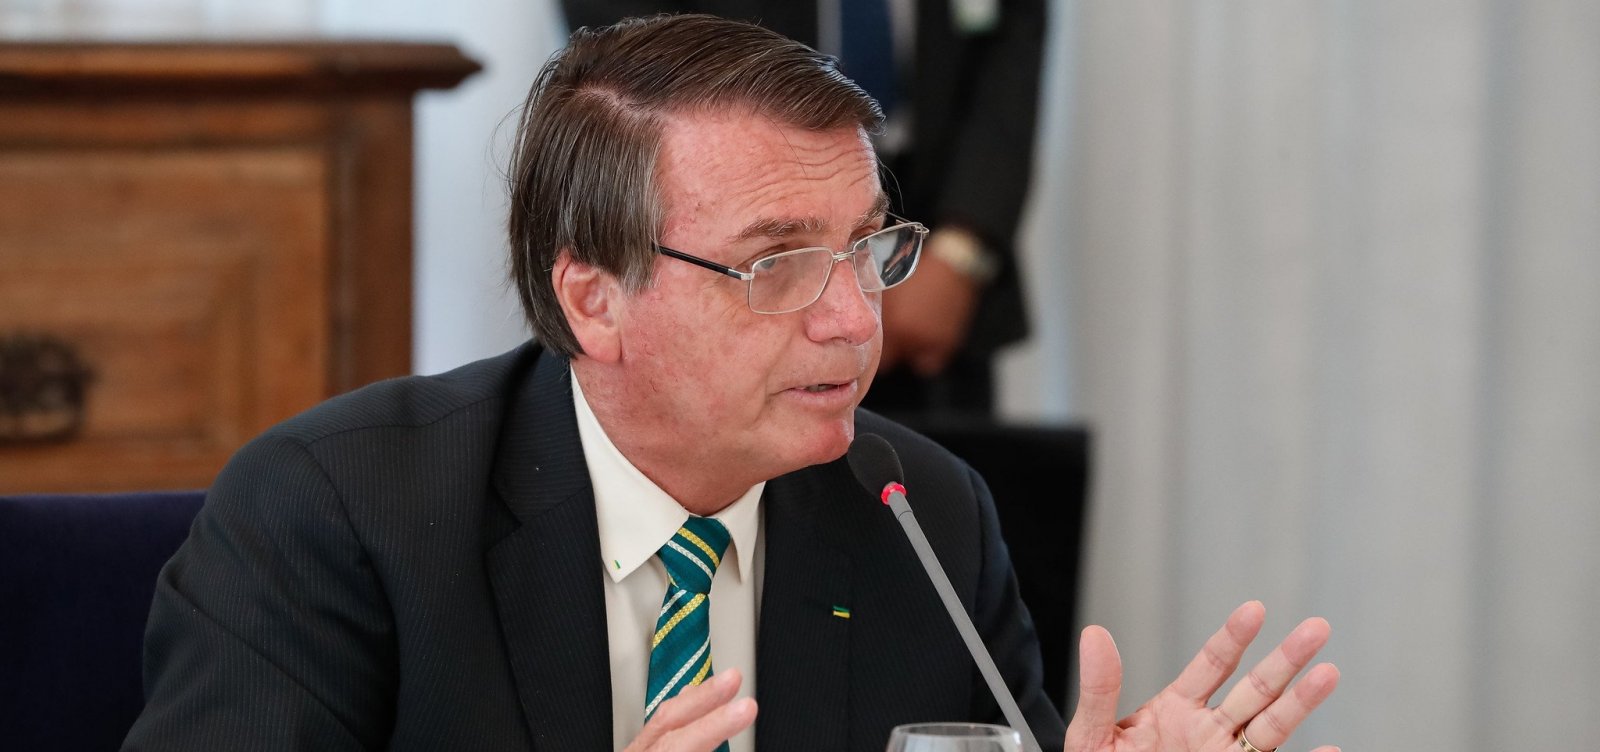 Brasil é um 'país que resgatou a credibilidade lá fora', diz Bolsonaro